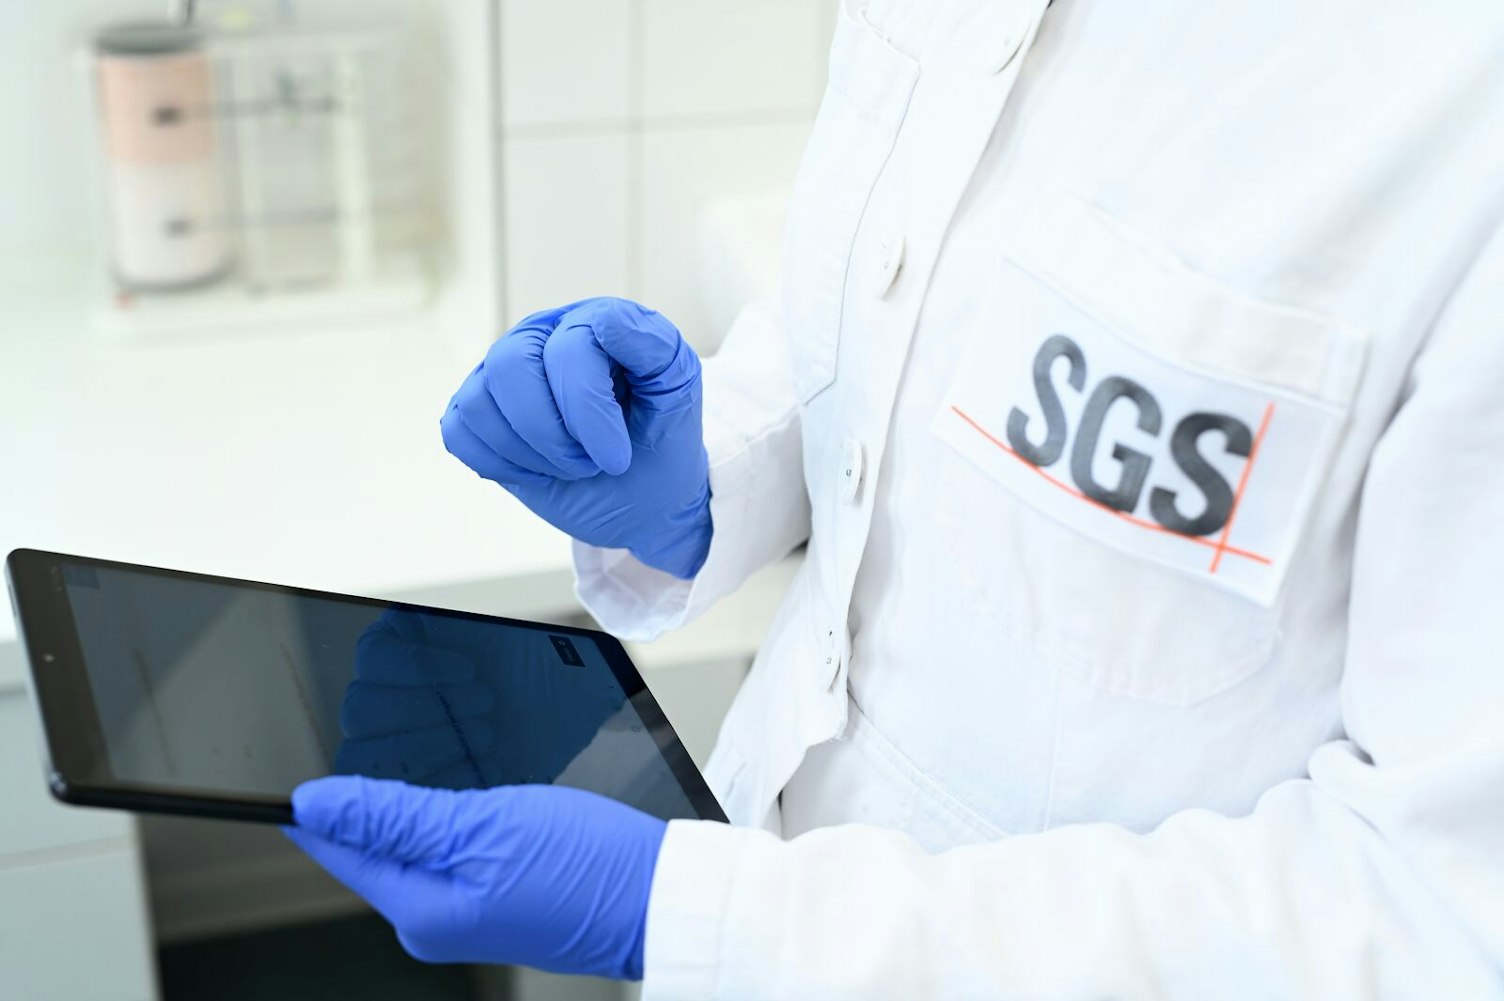 SGS Institut Fresenius Cosmetics Laboratory Analysis Hamburg, Germany